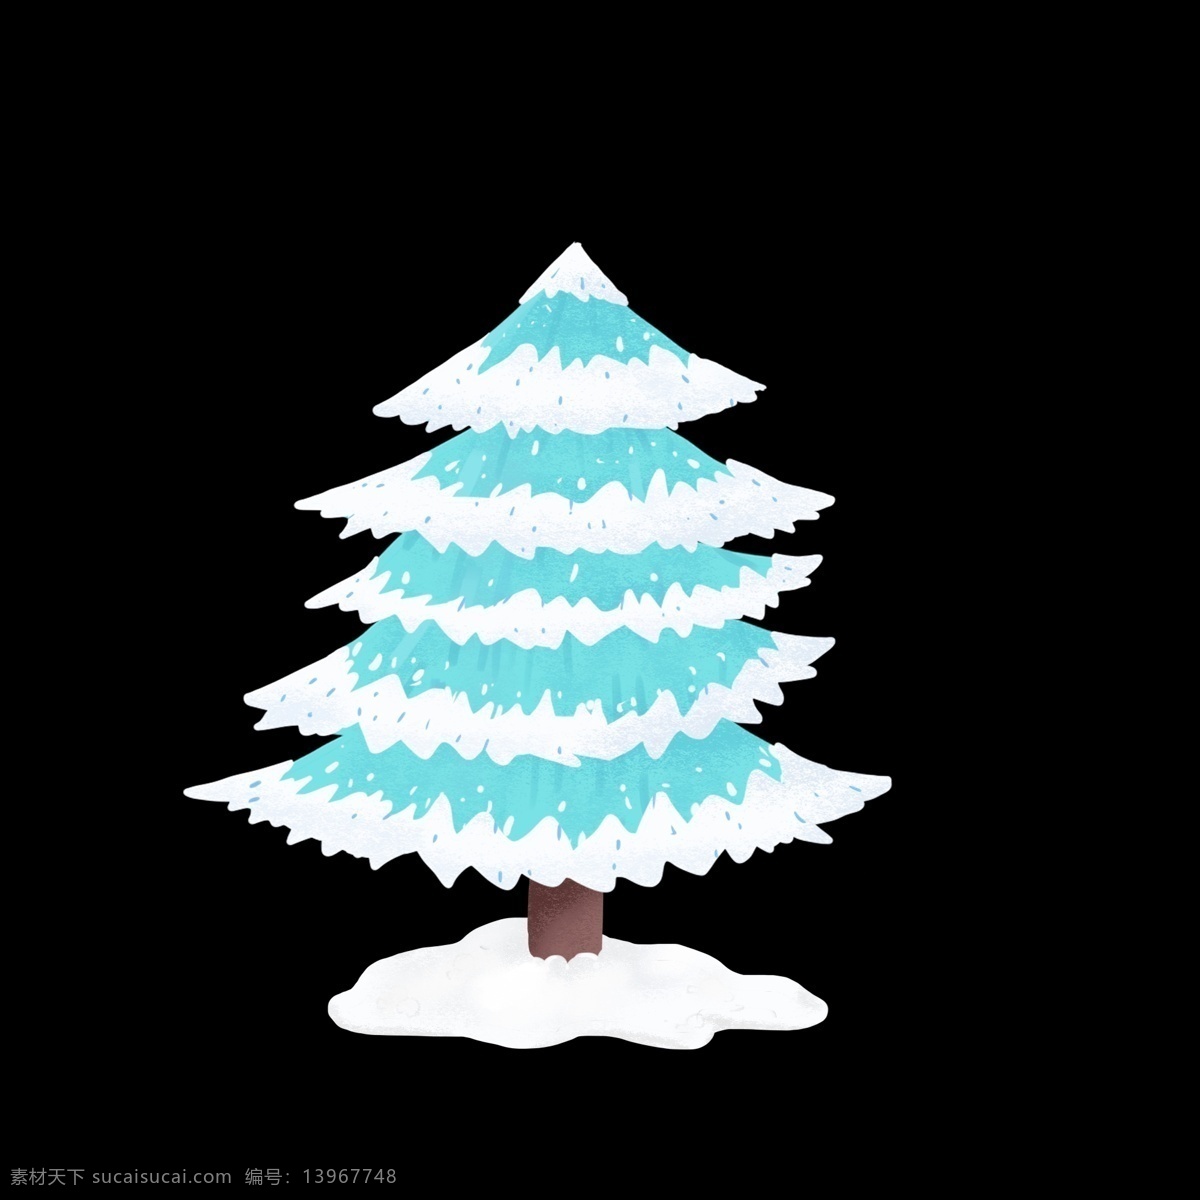 冬季 雪 树 圣诞节 下雪 大树 手绘 插 画风 元素 雪树 插画风 冬 圣诞 背景元素